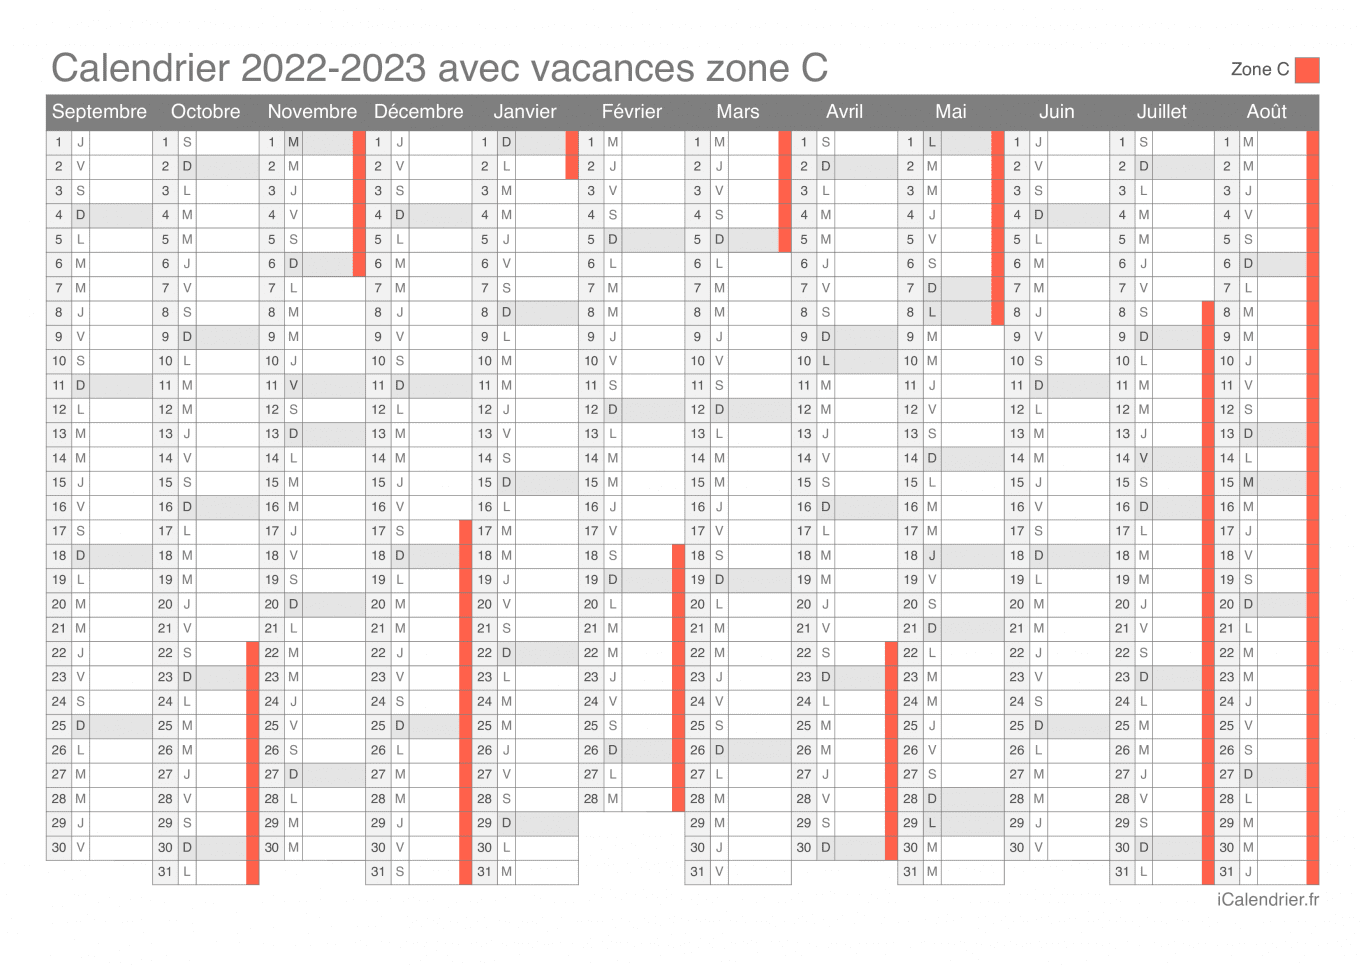 Calendrier des vacances scolaires 2022-2023 de la zone C